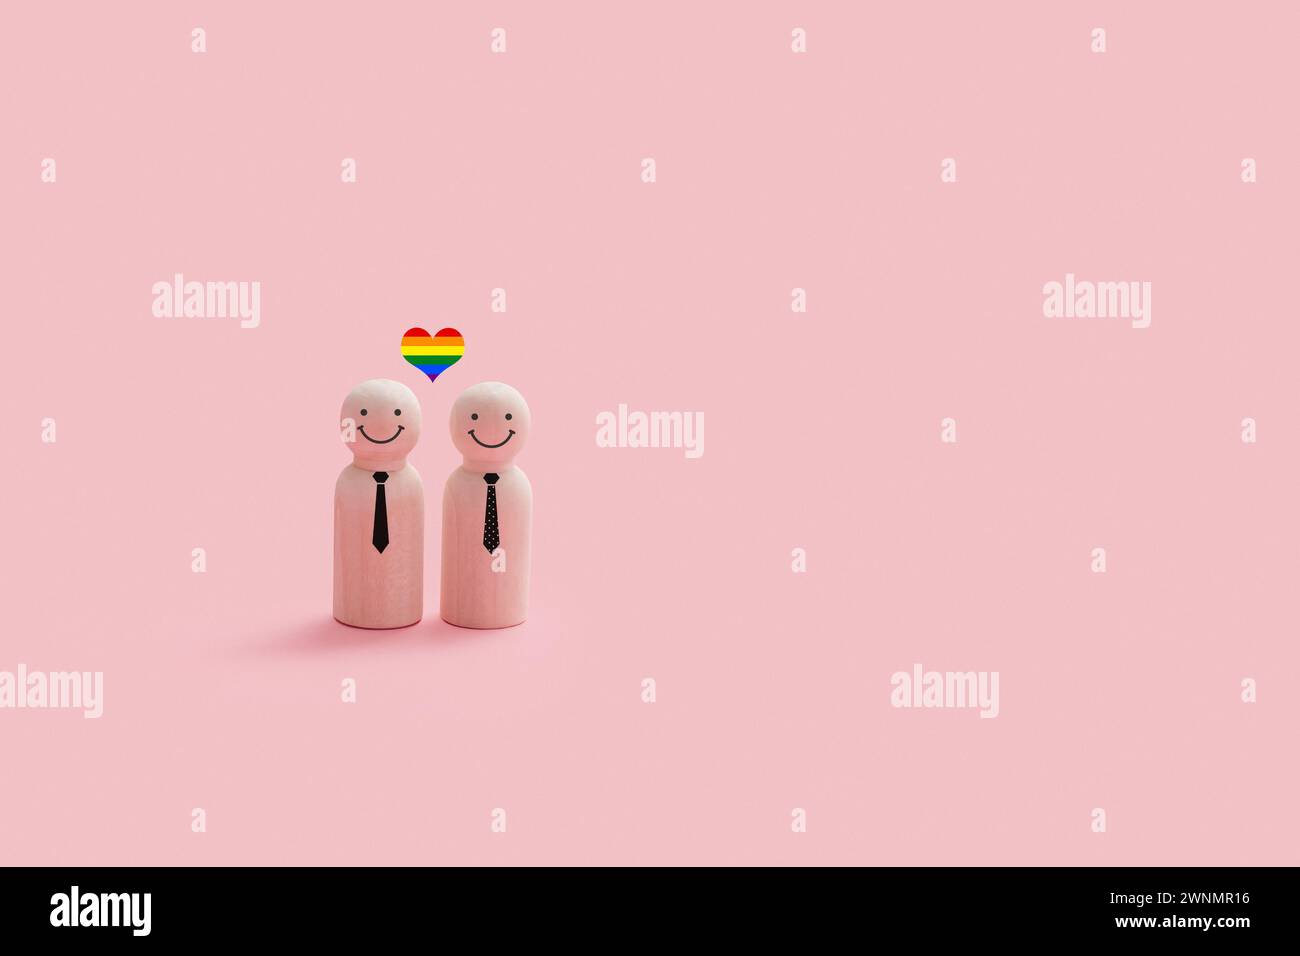 Personnages joyeux de couple gay en bois isolés sur un fond rose. Chaque figurine a un visage souriant simple, et un petit coeur de fierté couleur arc-en-ciel au-dessus de th Banque D'Images